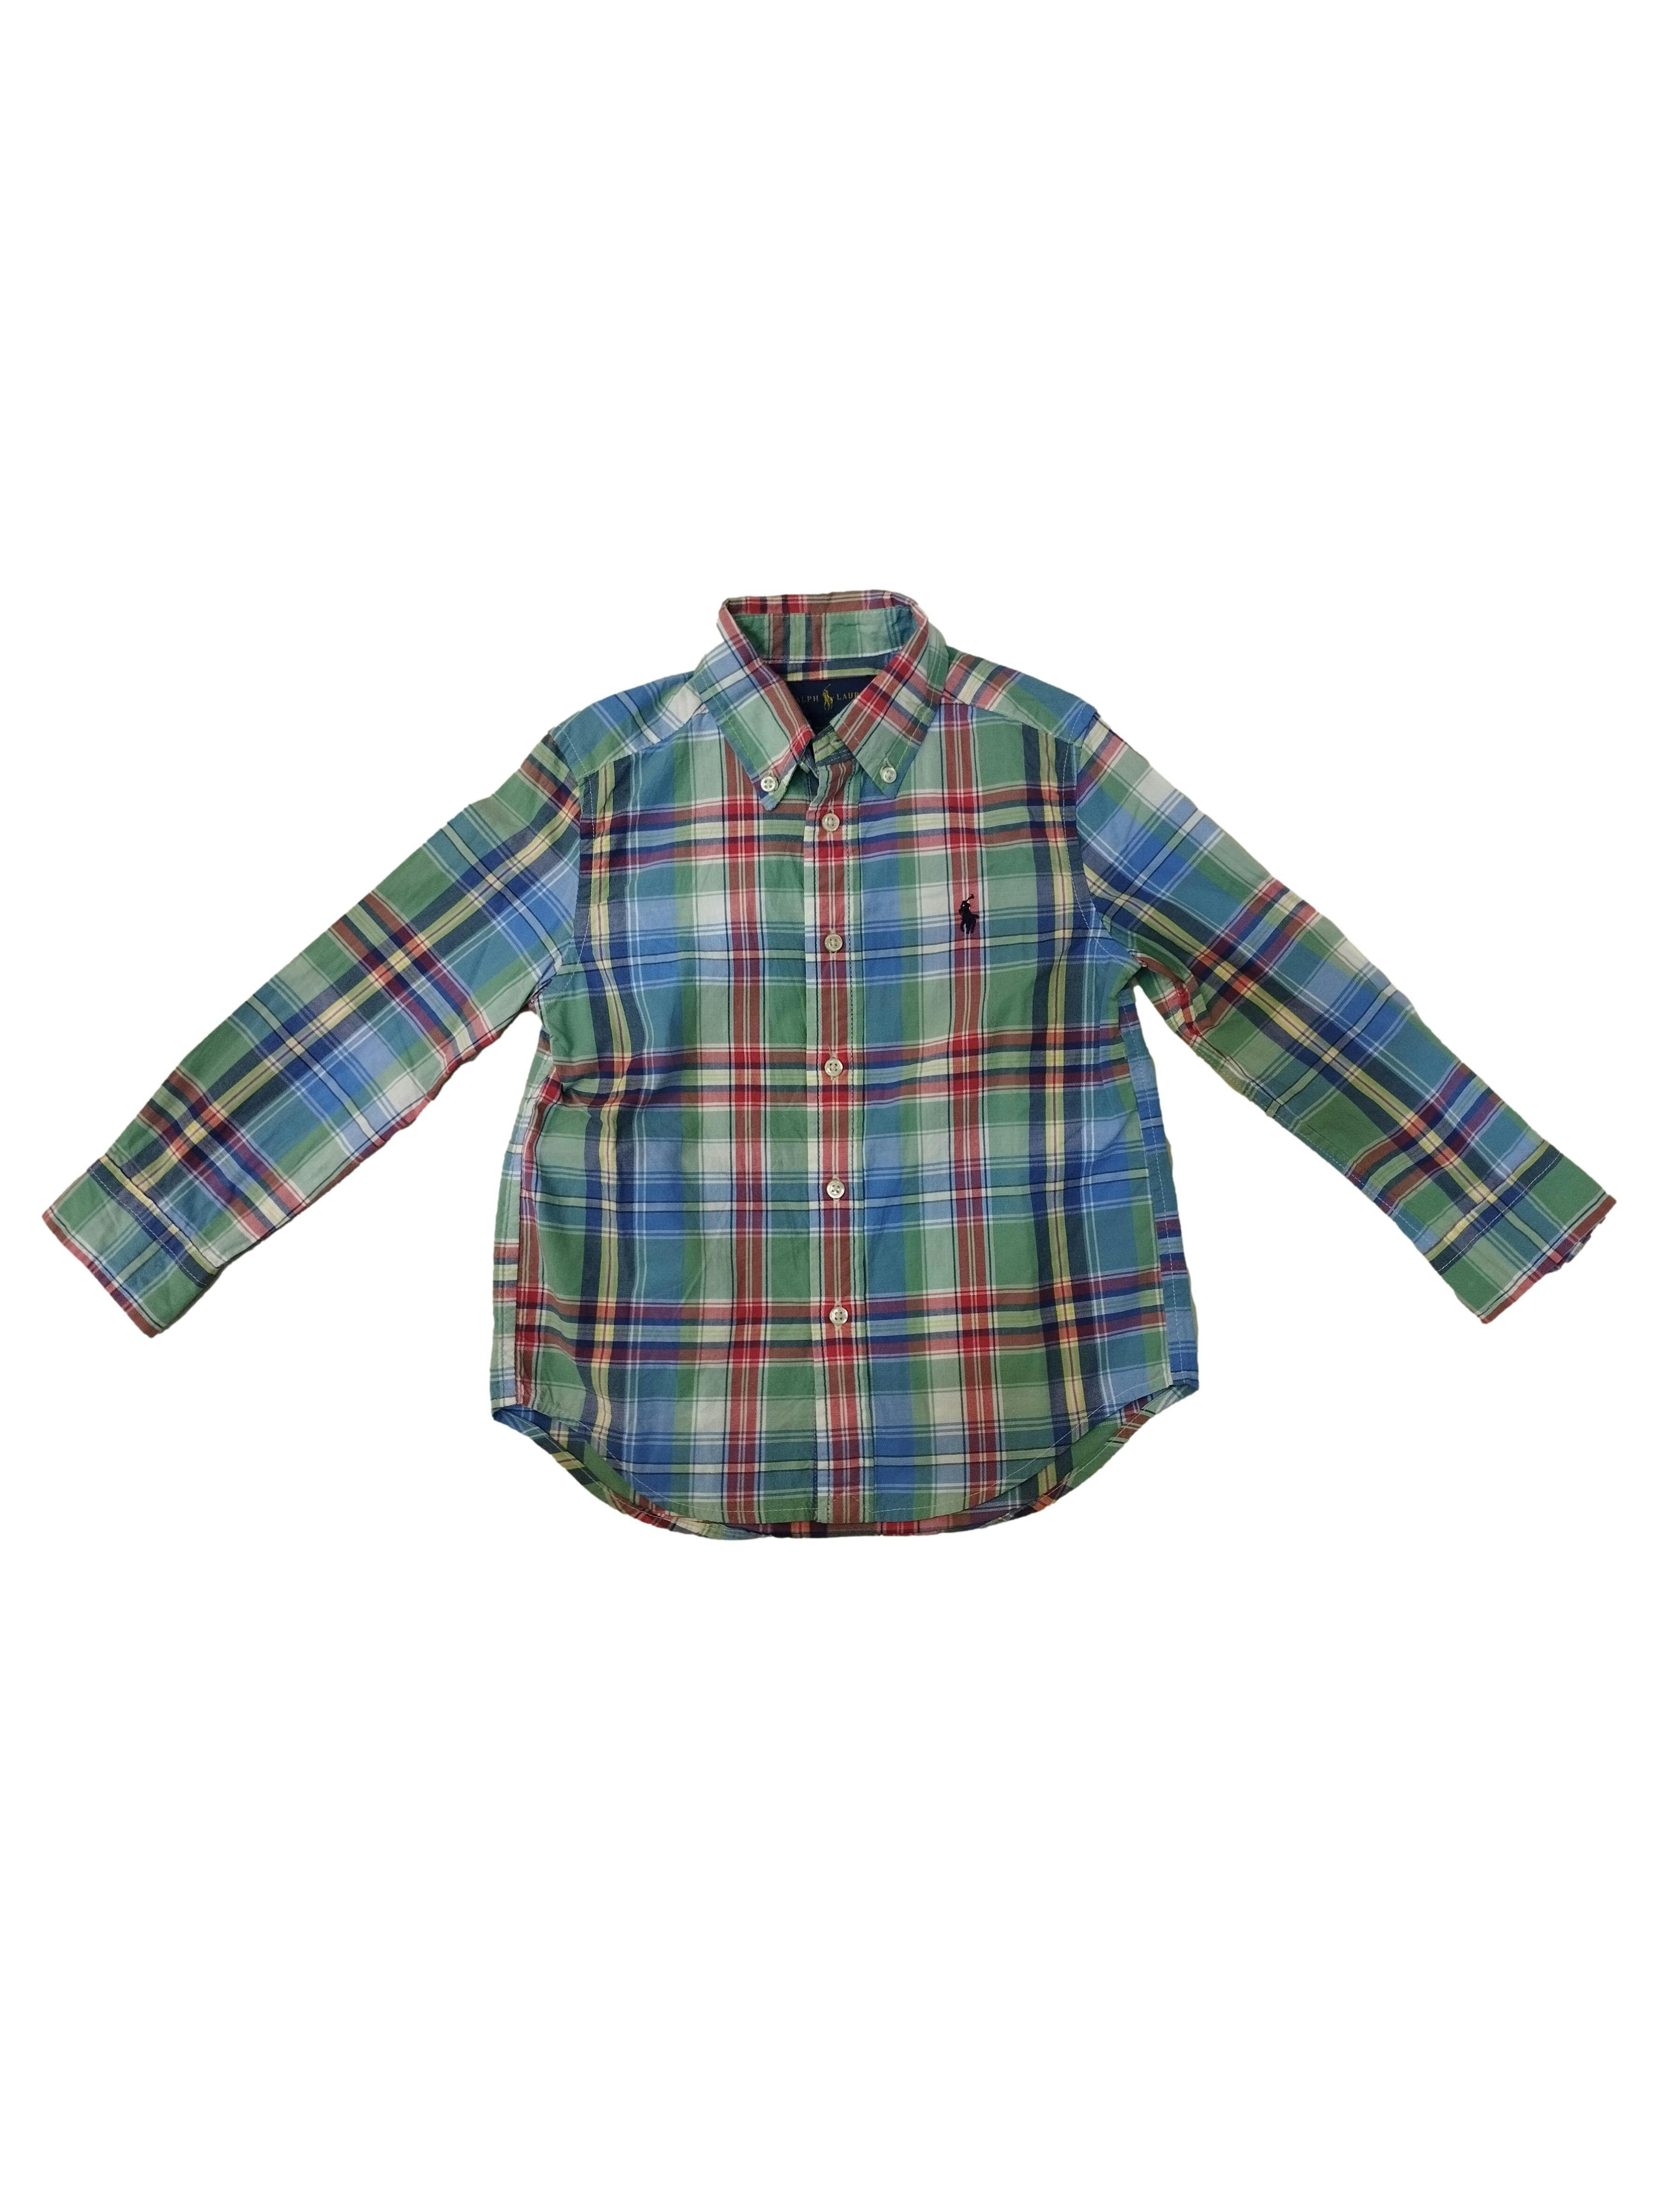 Camisa a cuadros multicolor Ralph Lauren, botones delanteros, en puños y cuello. Pecho: 70 cm, Largo: 45 cm